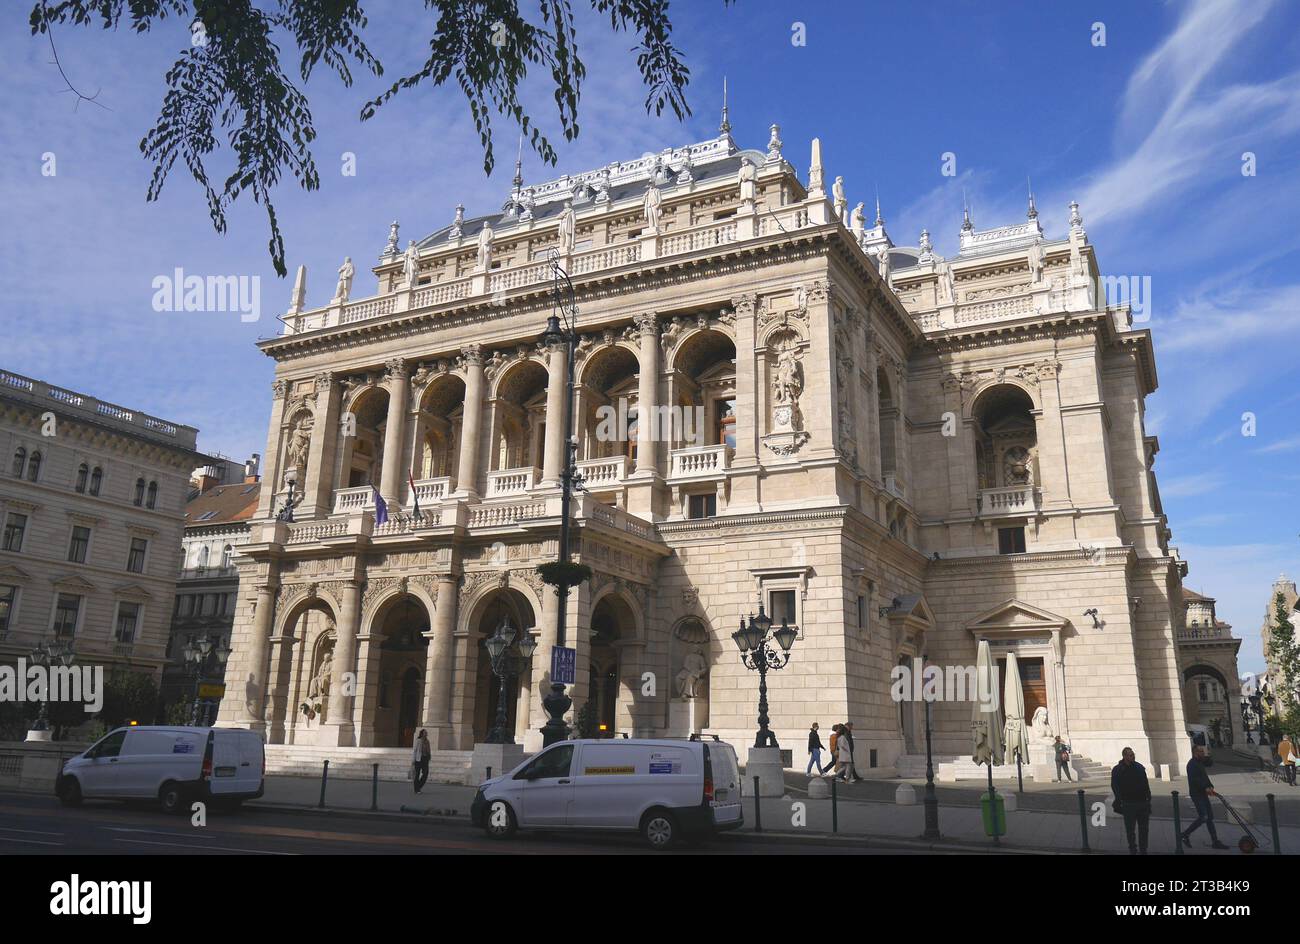 Die Ungarische Staatsoper, Andrassy ut, Andrassy Avenue, Budapest, Ungarn Stockfoto